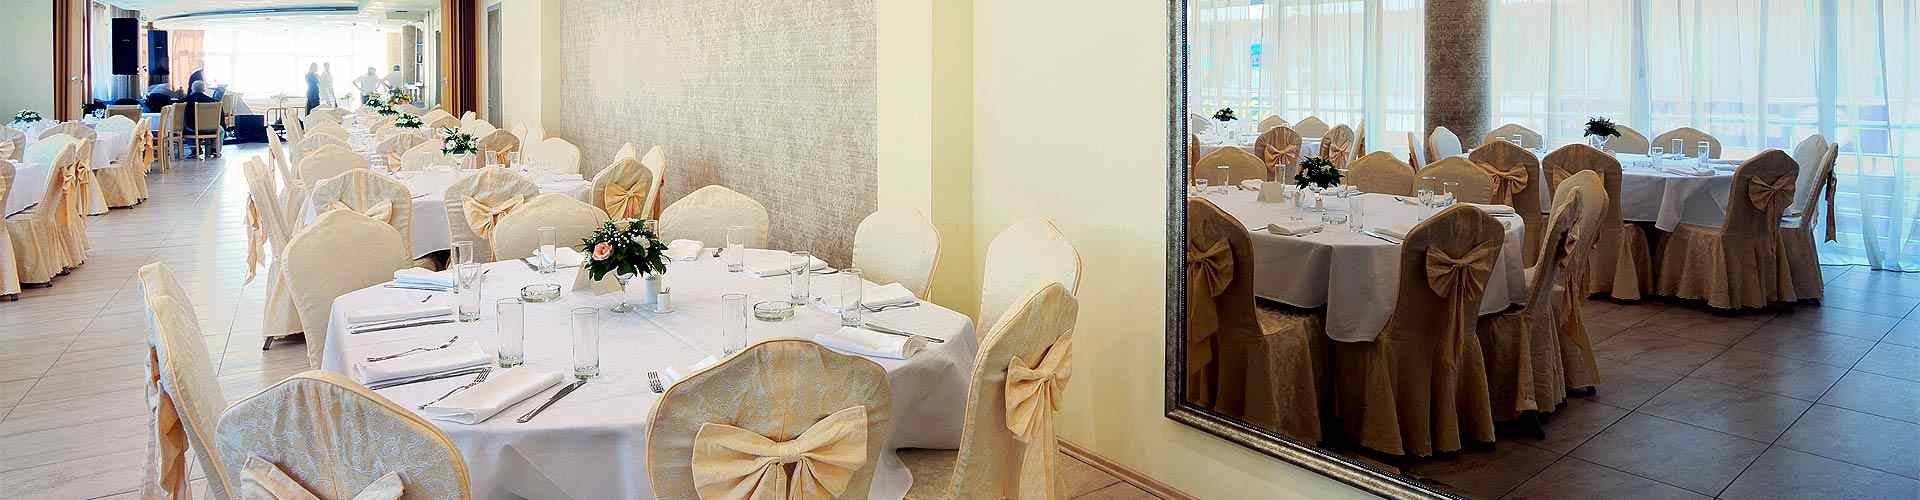 Restaurantes para bodas 2019 en Villafranca de Ebro